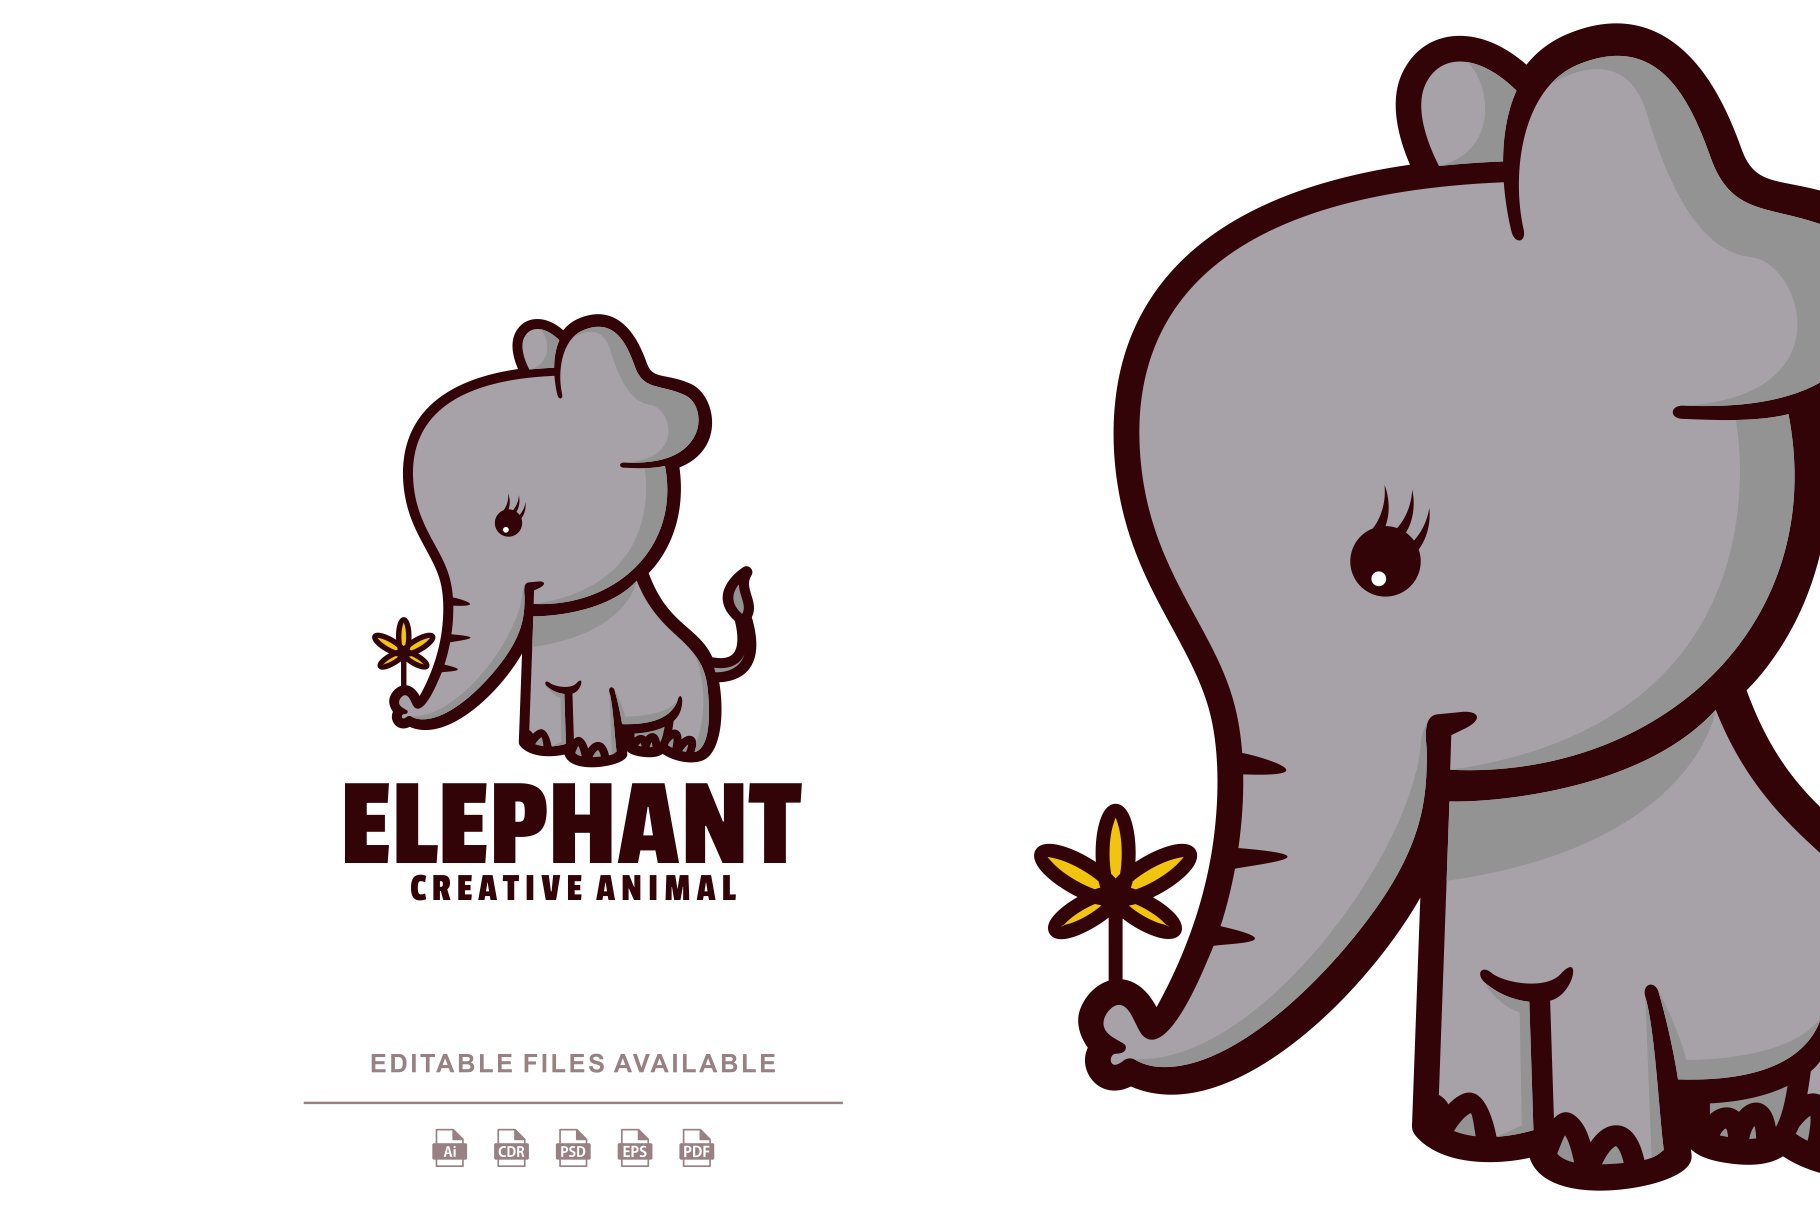 Elephant Cute Cartoon Logo cover image.